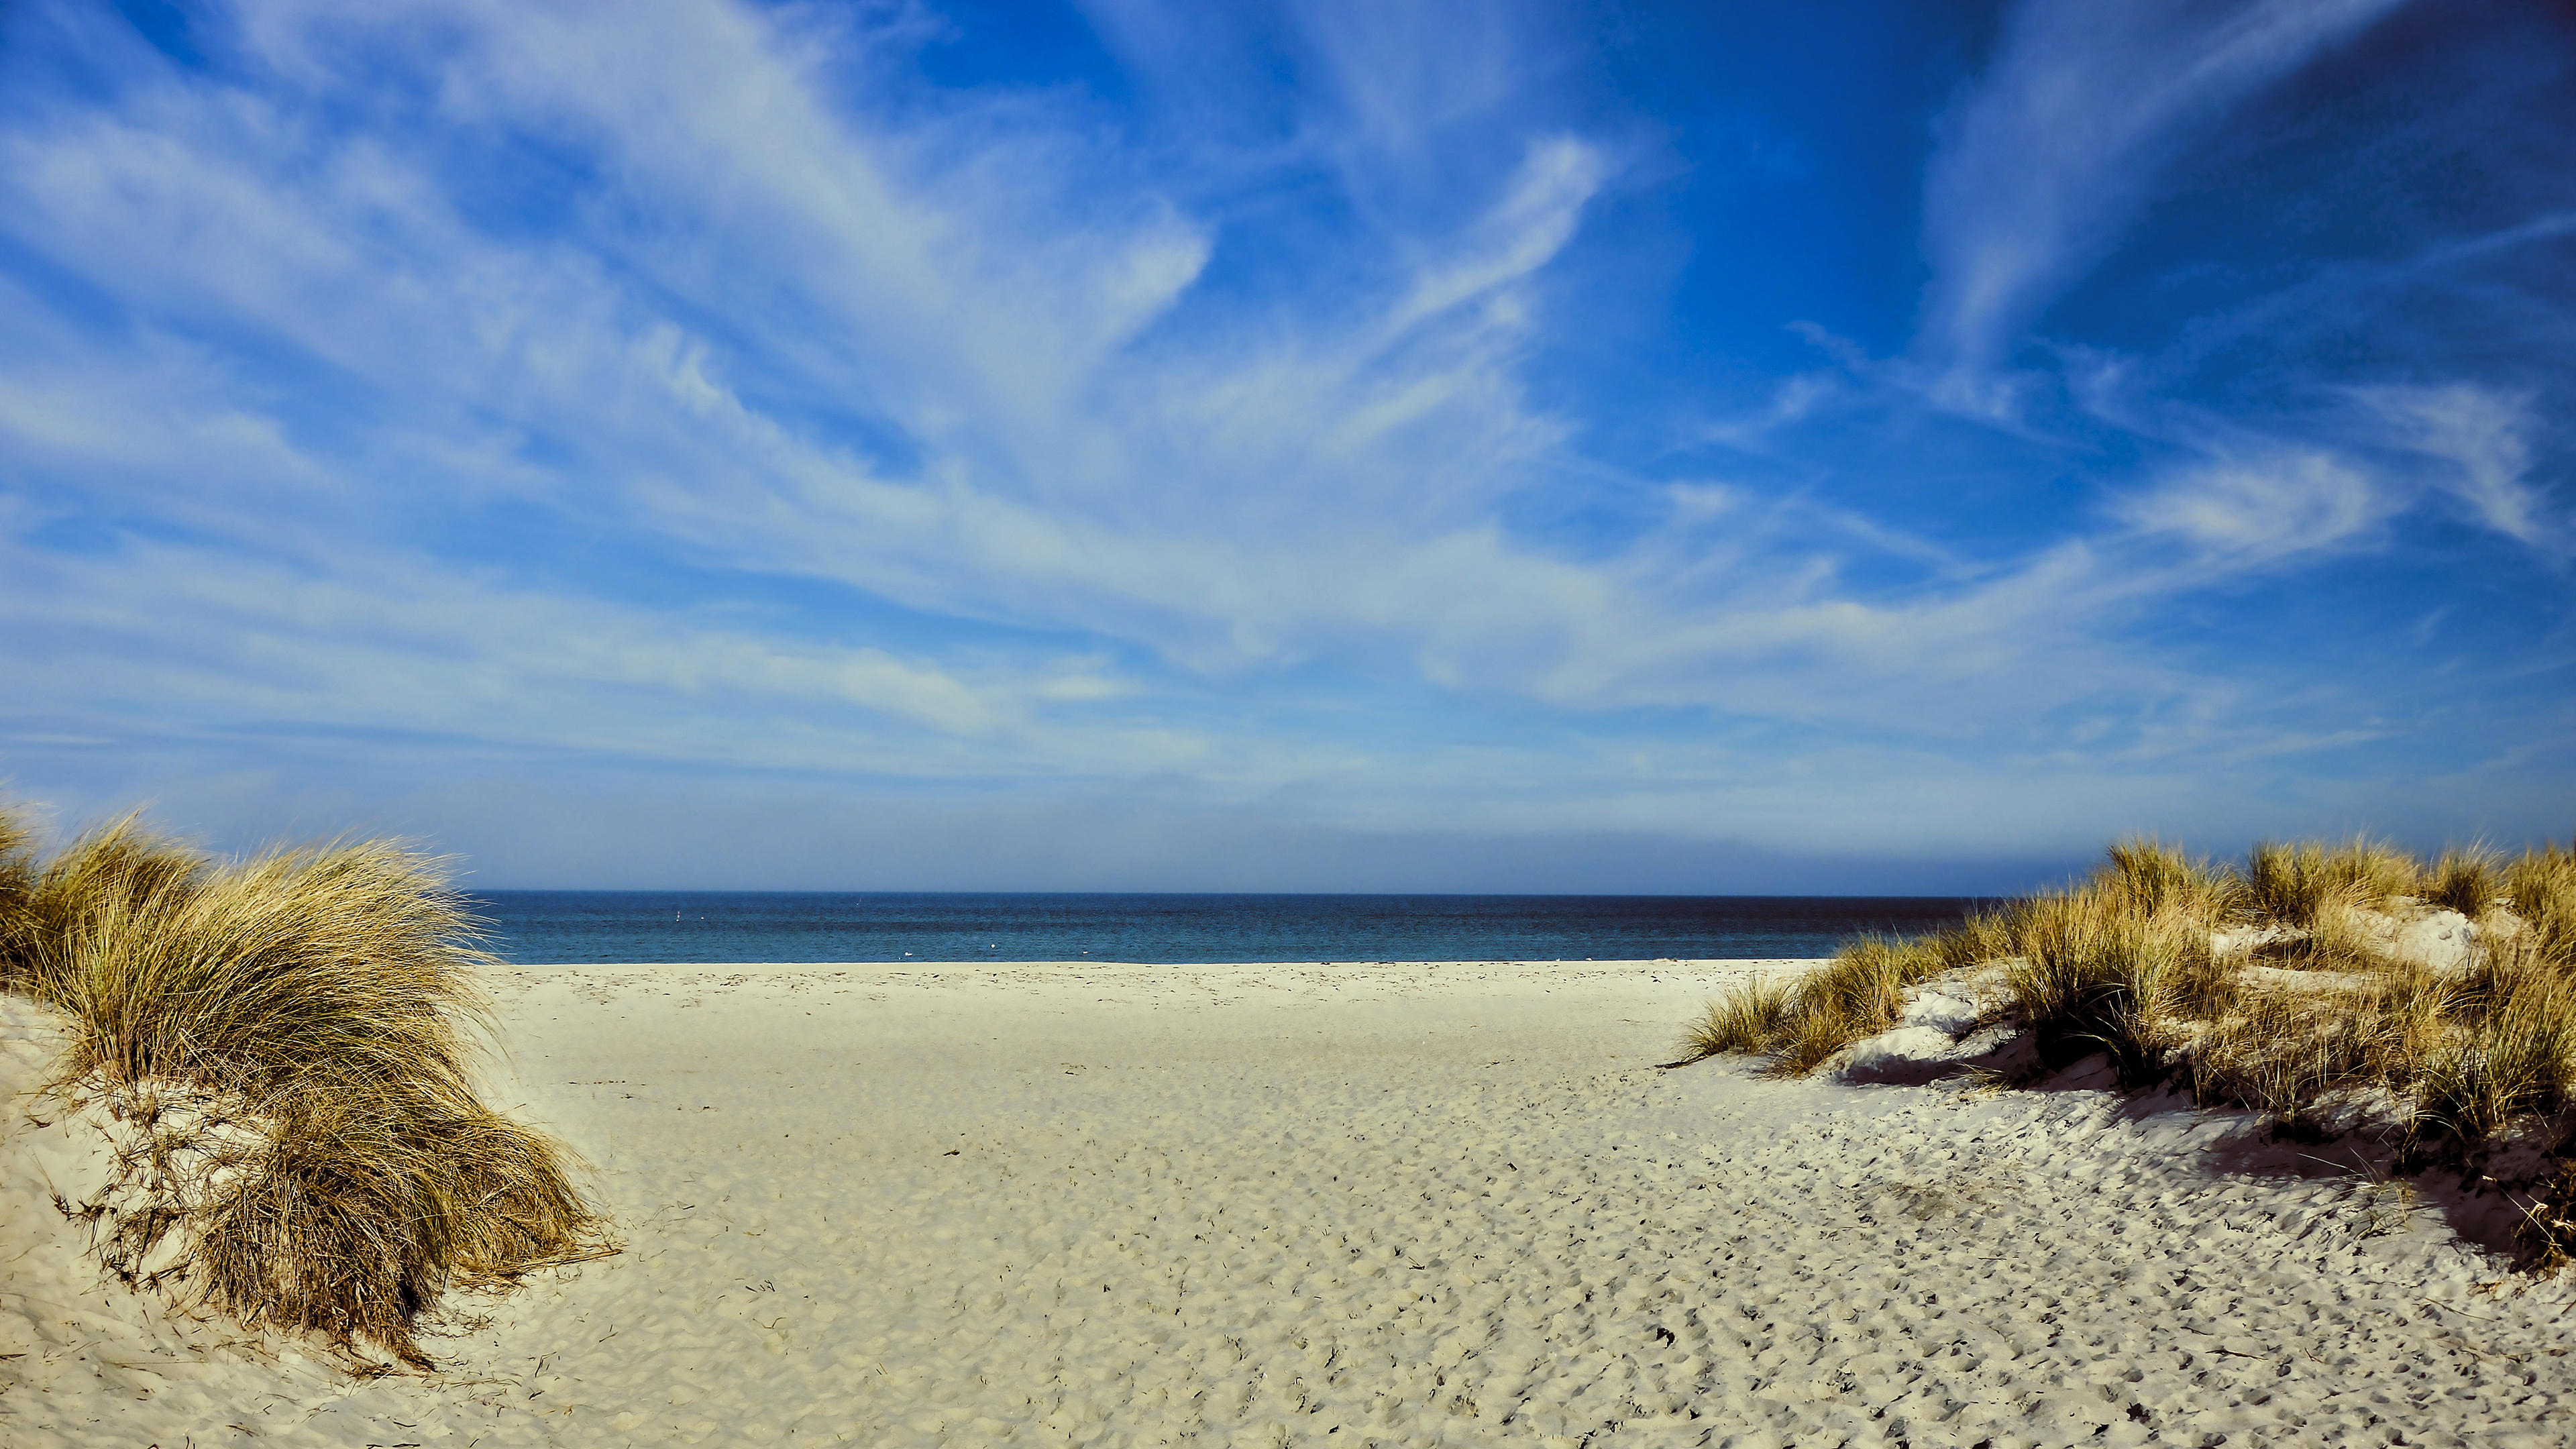 Скачать обои бесплатно Море, Пляж, Песок, Земля/природа картинка на рабочий стол ПК